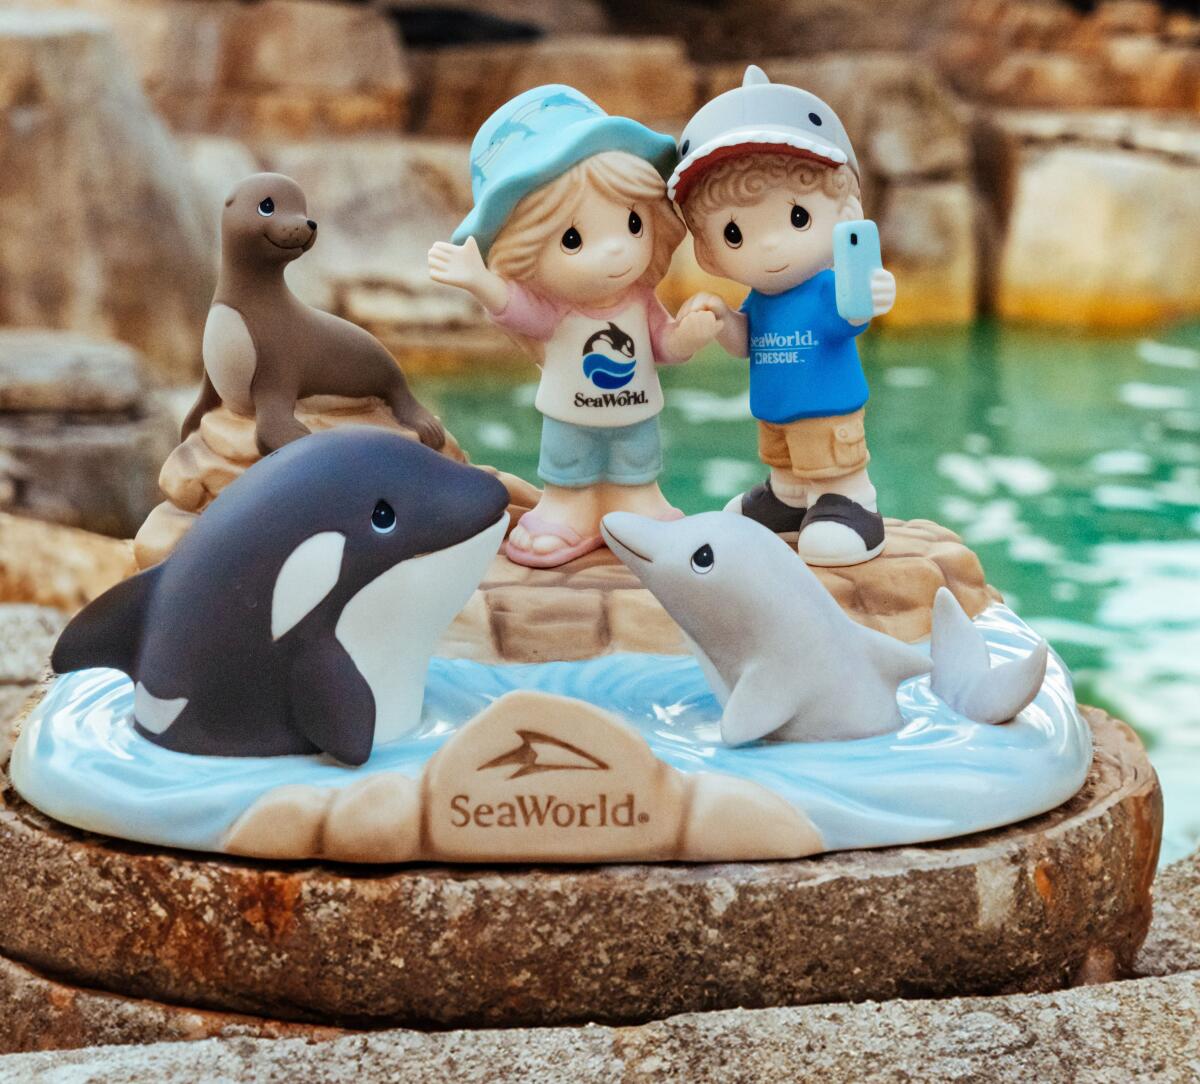 SeaWorld 60th anniversary Precious Moments figurine.